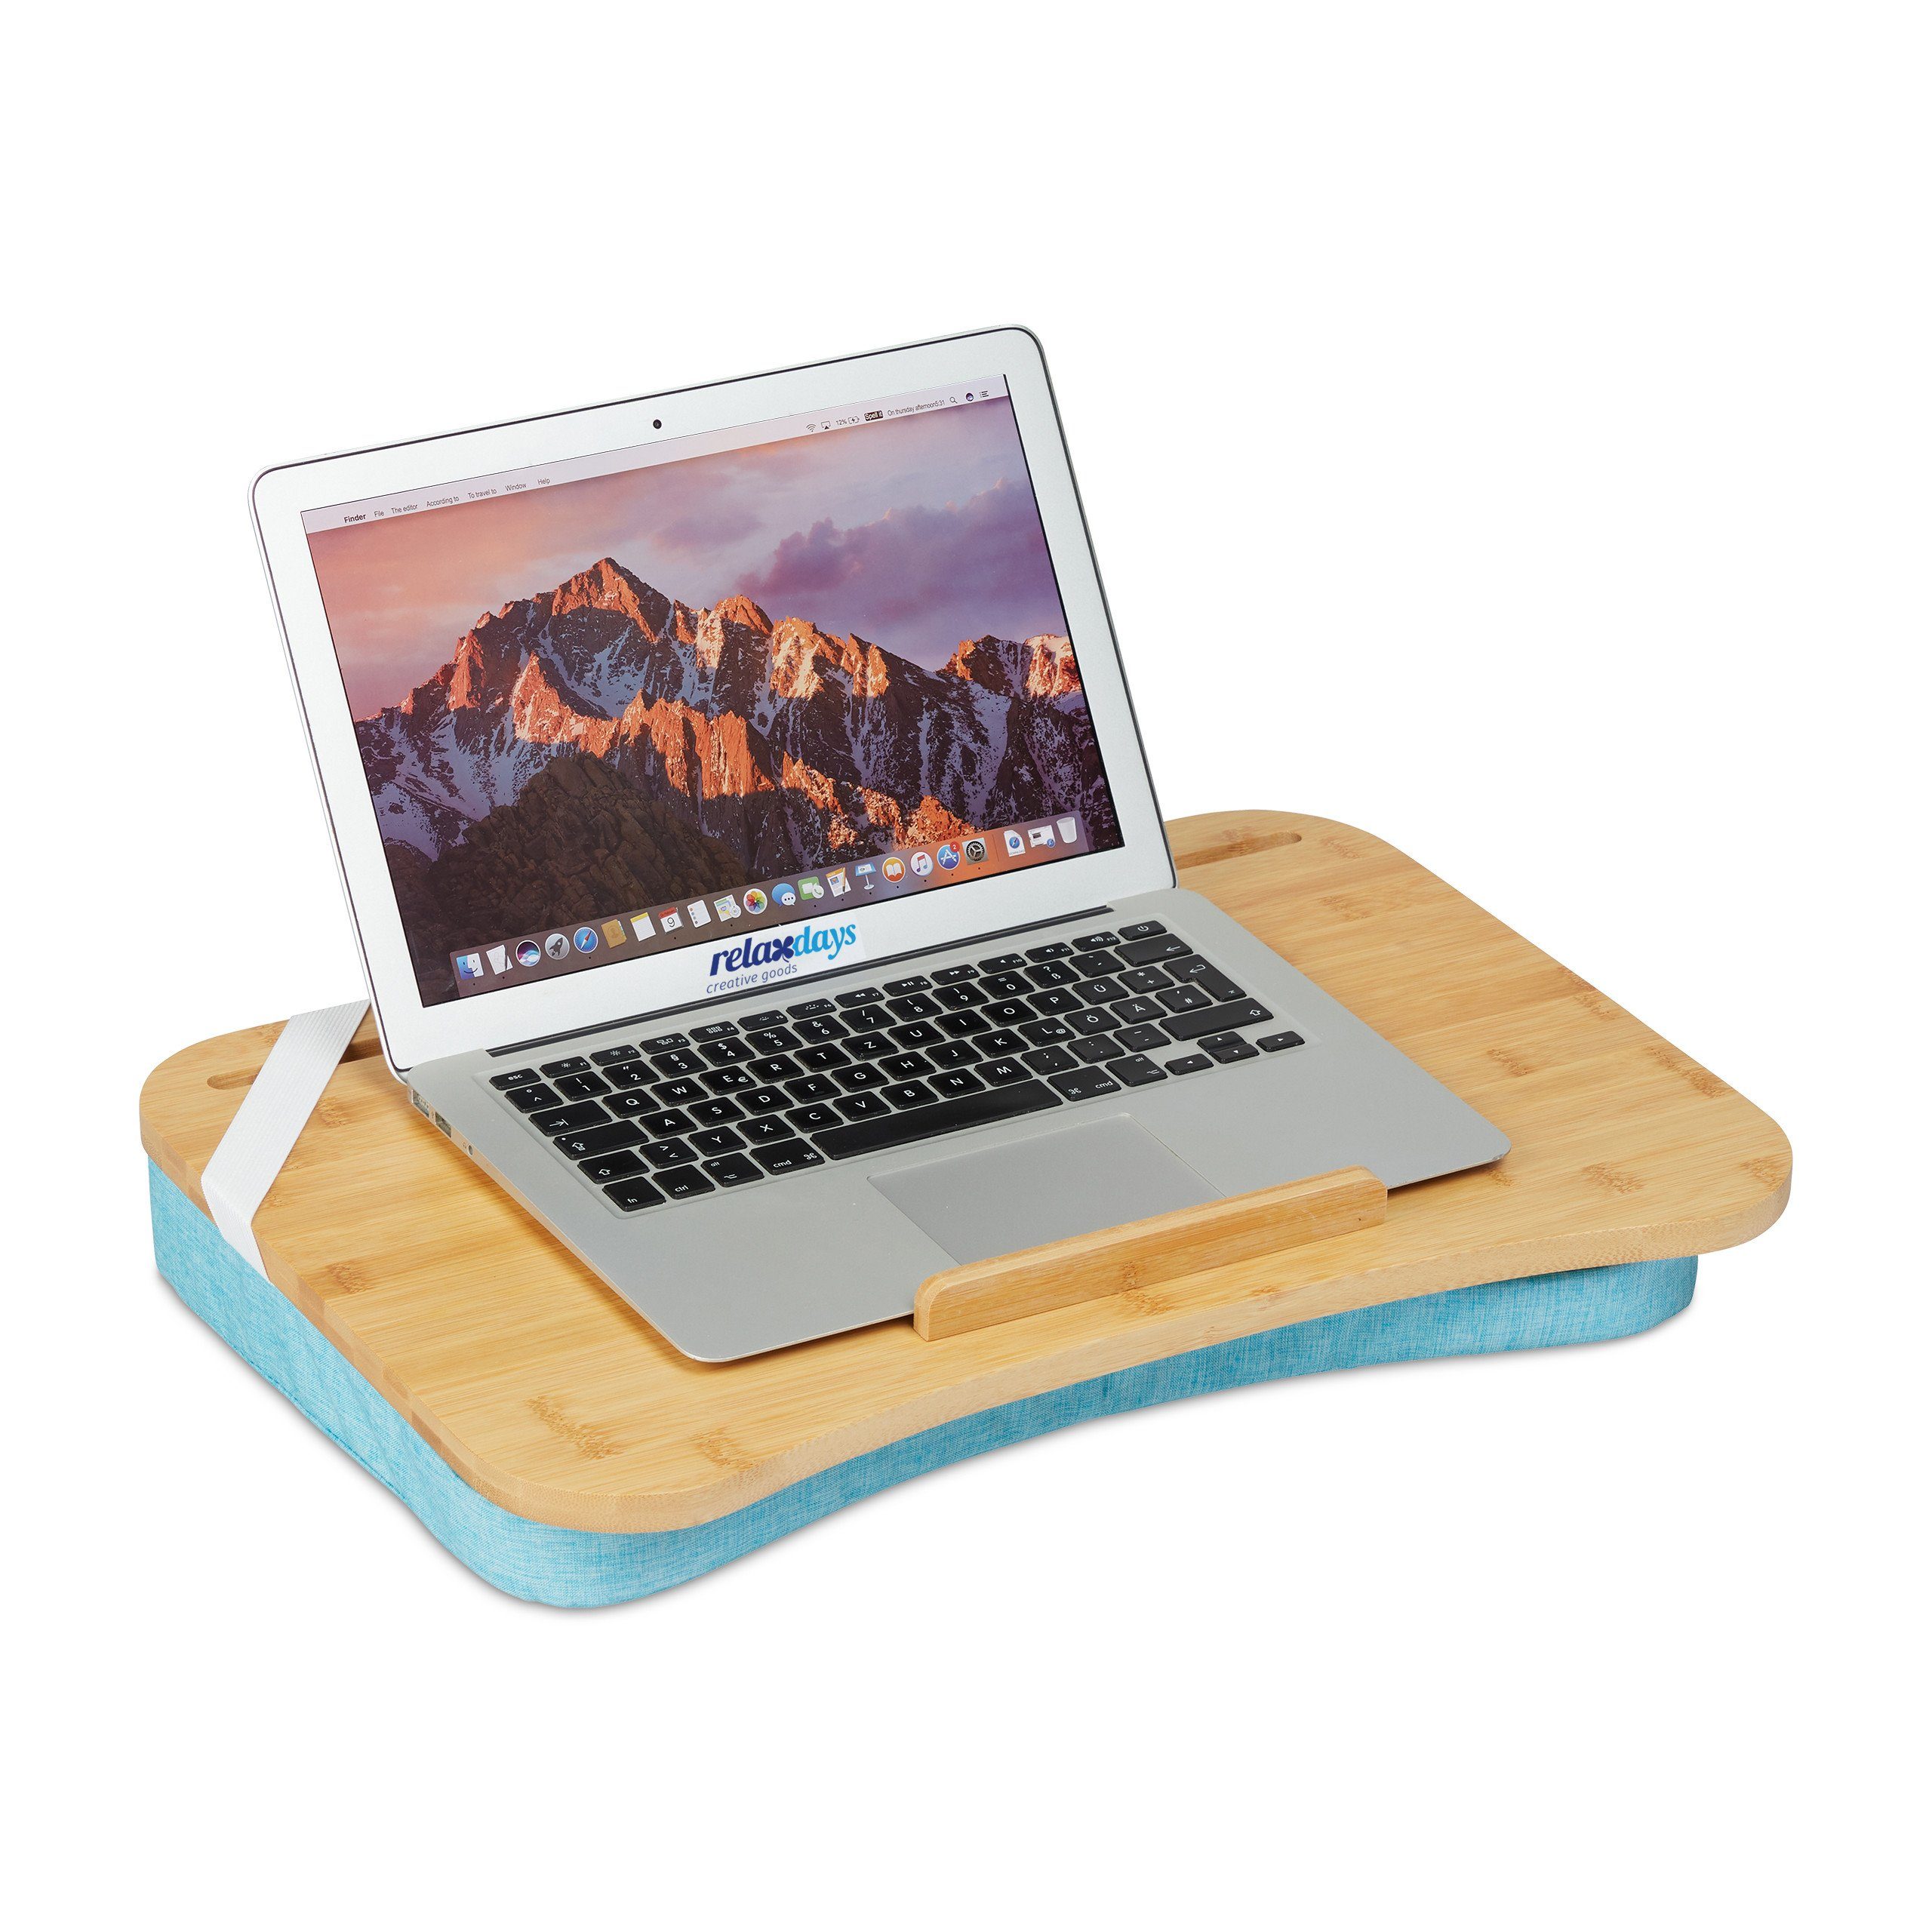 Laptop Laptopkissen Tablett Bambus mit relaxdays Bambusablage, Blaues